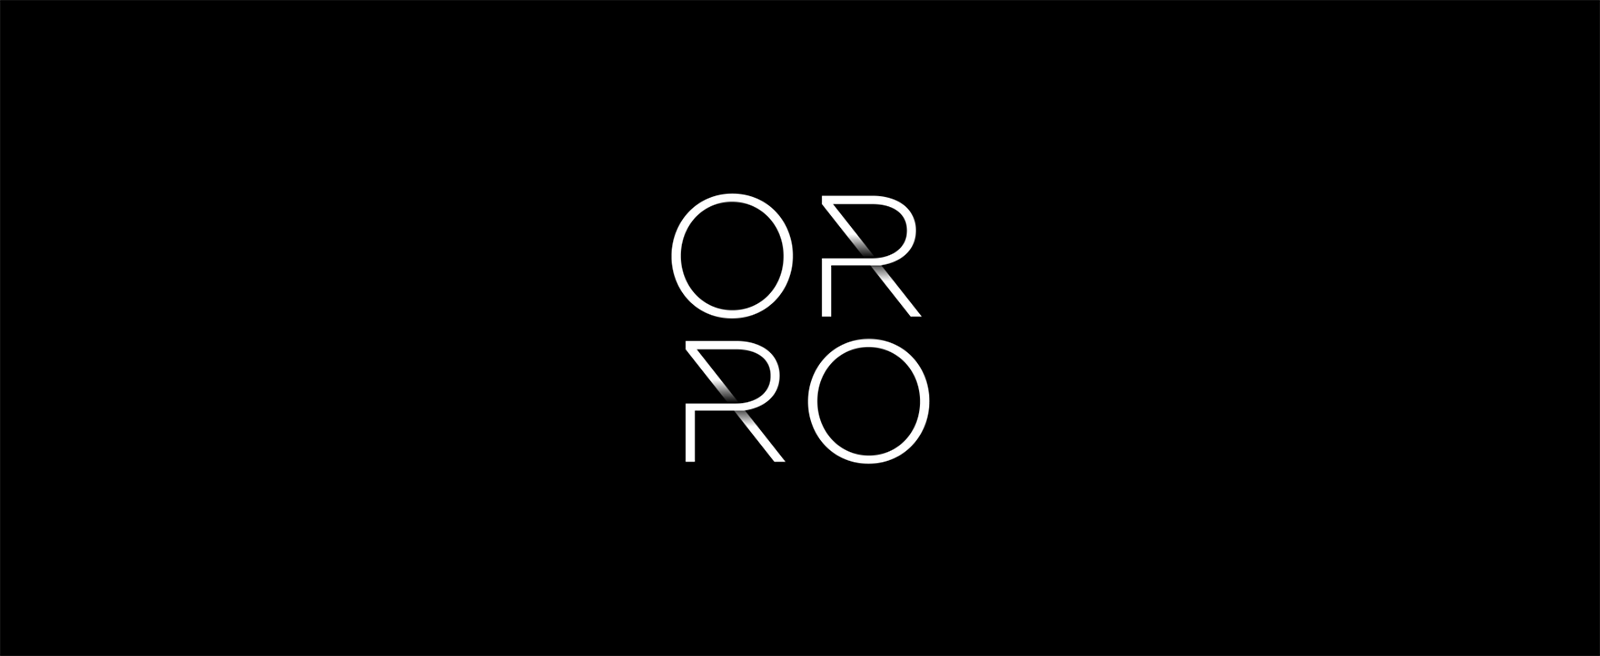 Orro照明系统品牌启用全新的品牌视觉vi设计-vi设计01